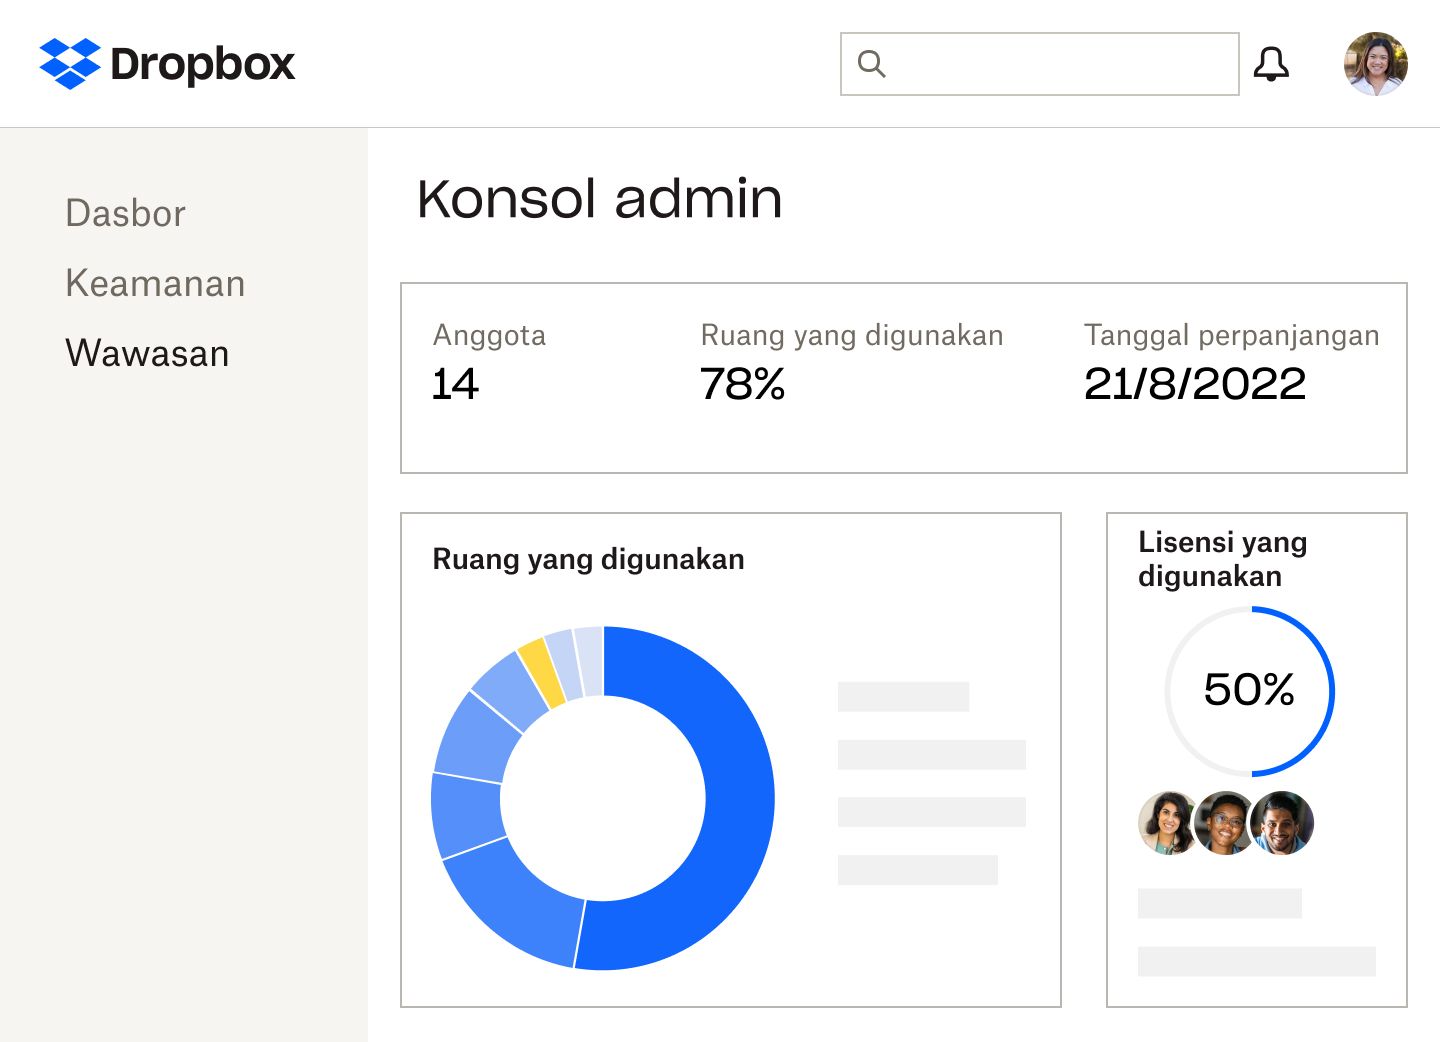 Konsol admin Dropbox yang menunjukkan jumlah anggota, persentase ruang penyimpanan dan lisensi yang digunakan, tanggal perpanjangan langganan, serta grafik lingkaran biru dan kuning dari ruang yang digunakan